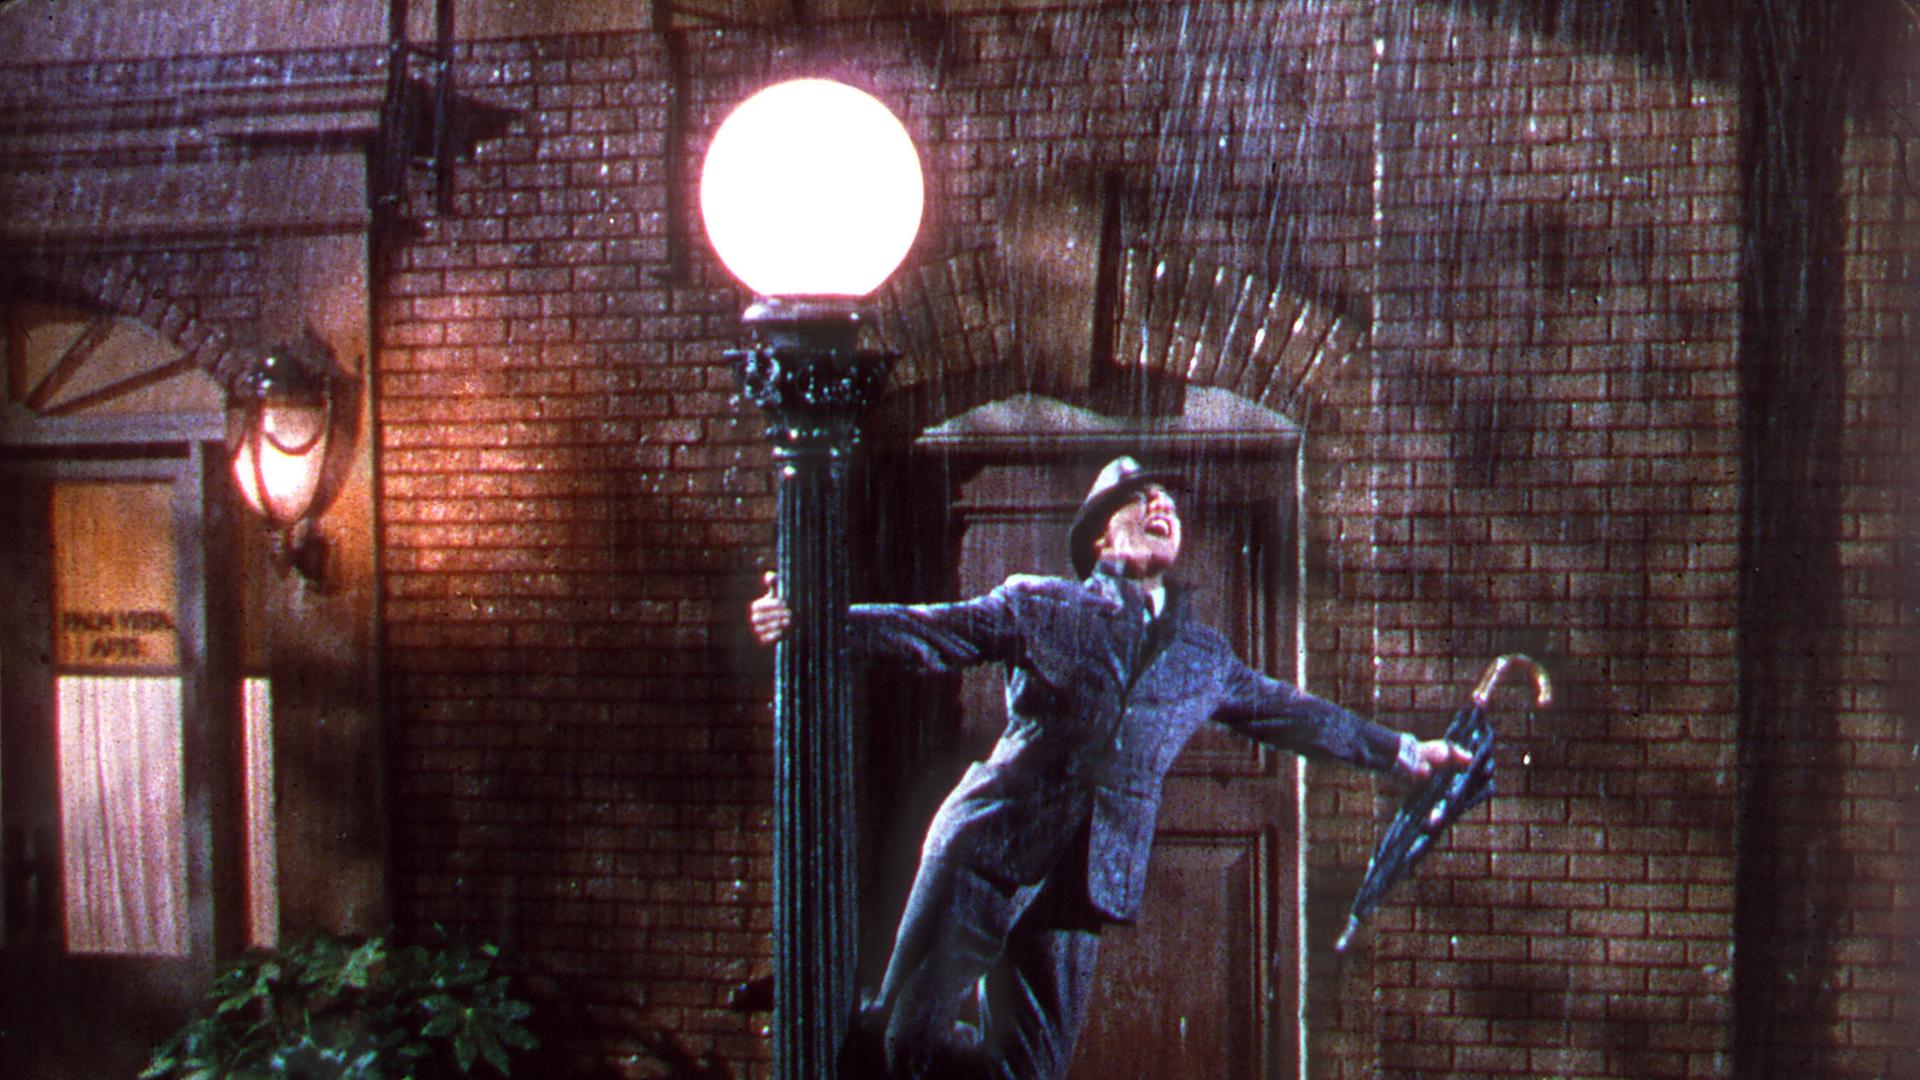 Gene Kelly in "Singin' in the Rain" - Stanley Donens Filmmusical von 1952